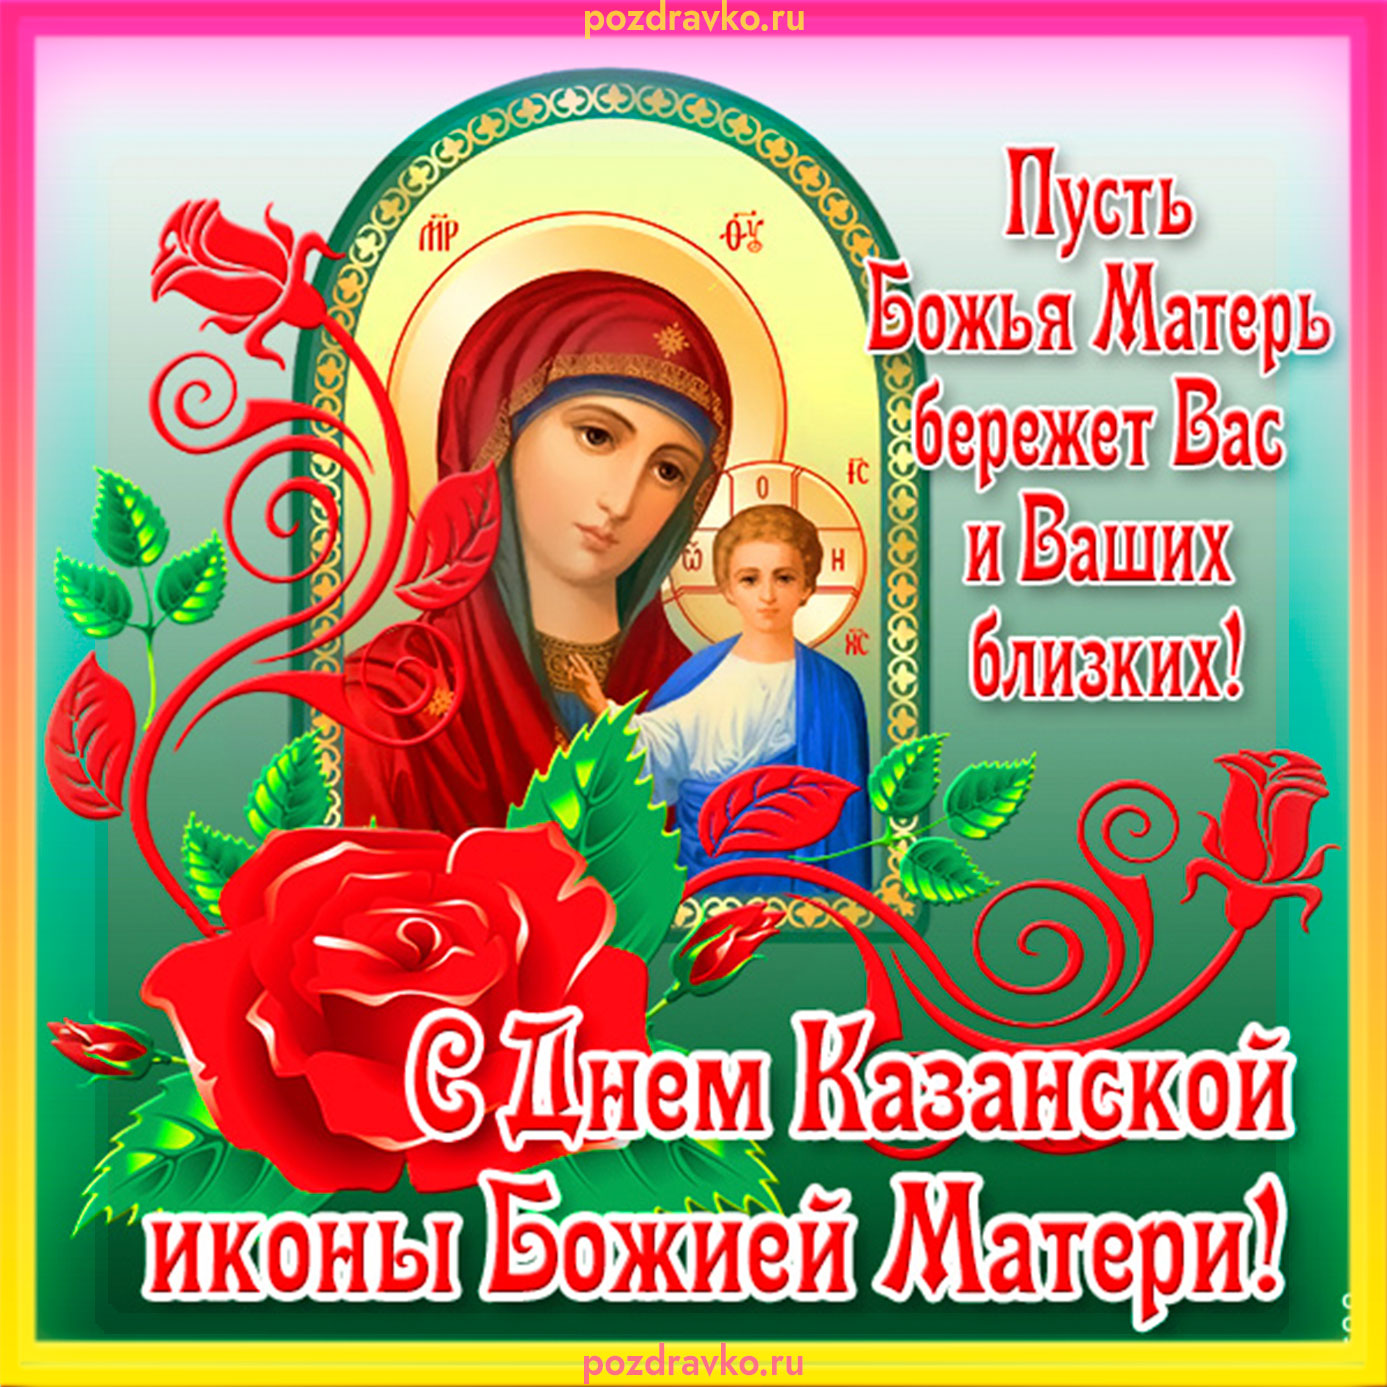 Обои С Днем иконы Казанской Божьей Матери: Скачать бесплатно